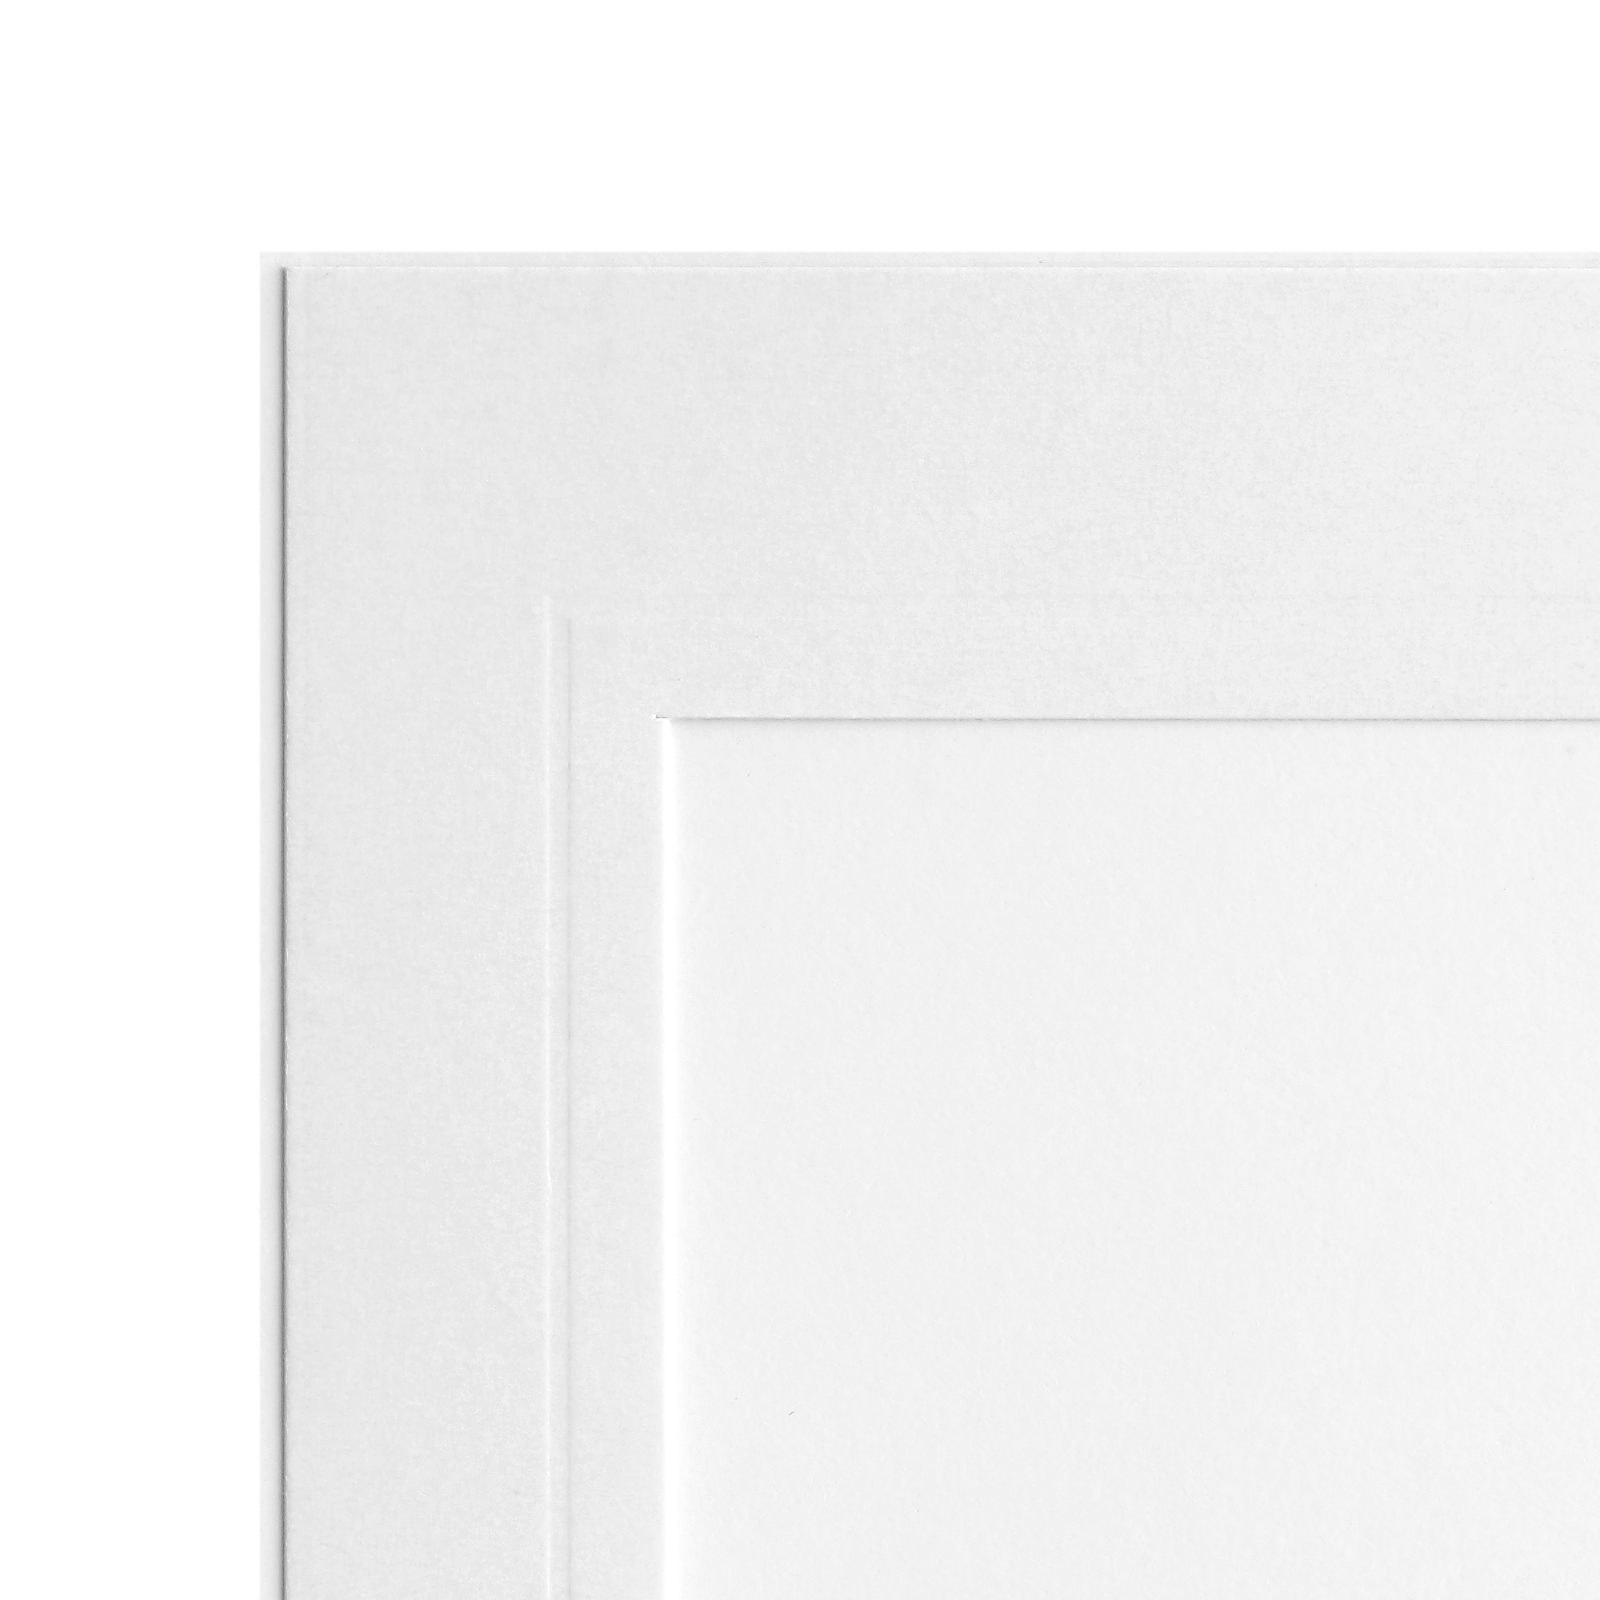 Endlosleporello 50 Teile - 13x18 cm - weiß - geprägter Rand